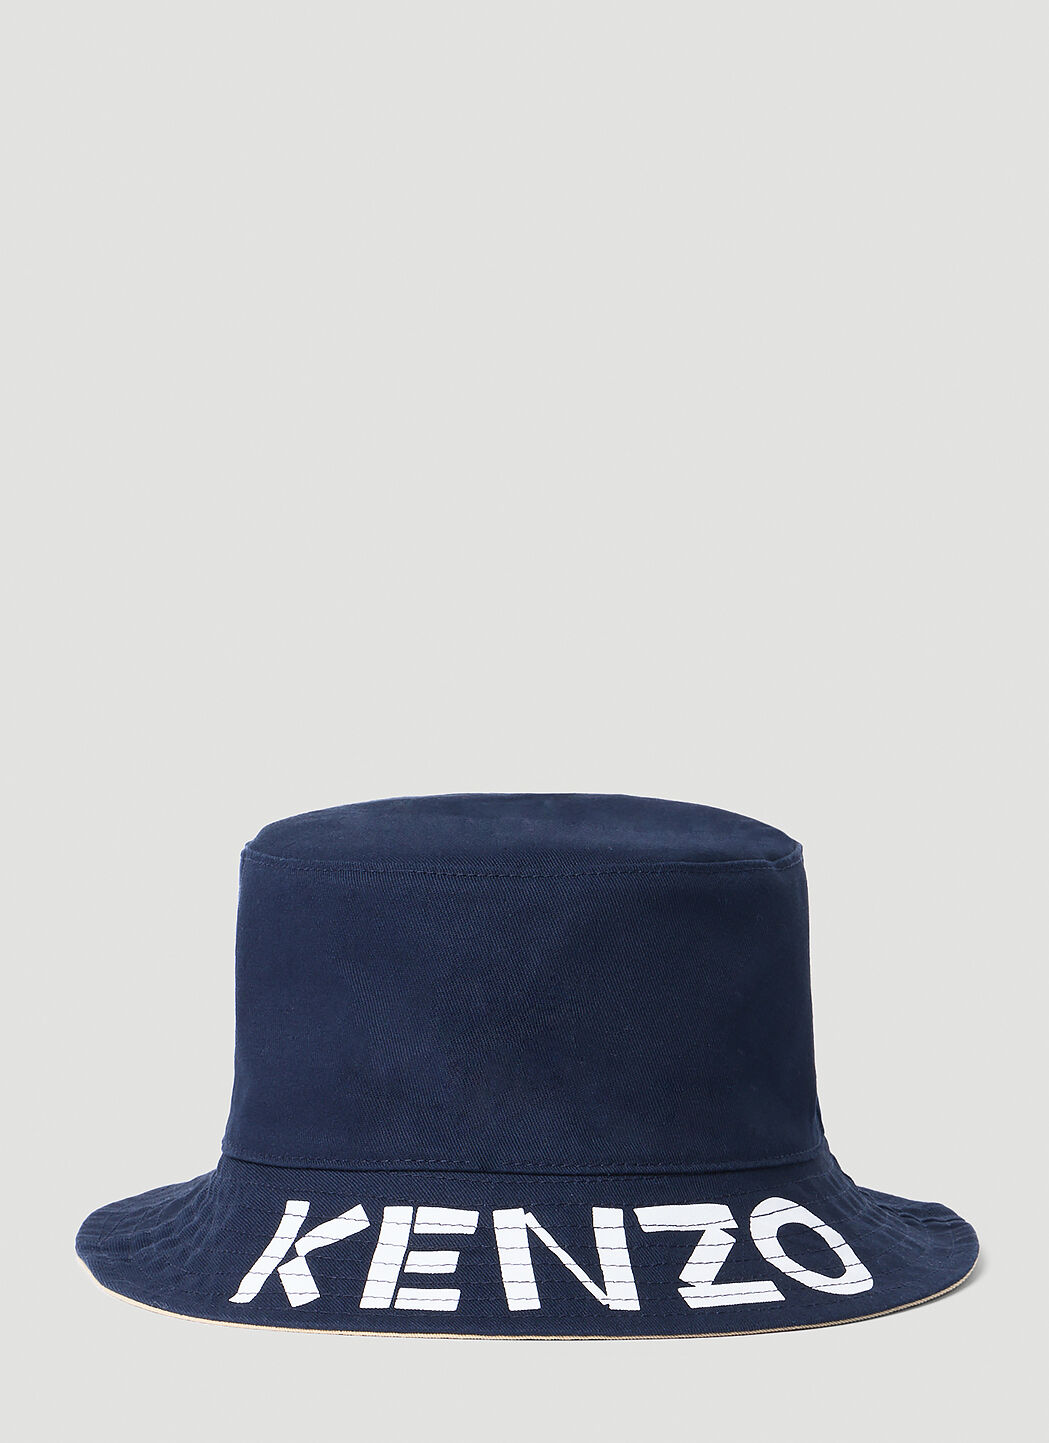 Kenzo 로고 프린트 양면 버킷 햇 그린 knz0253017